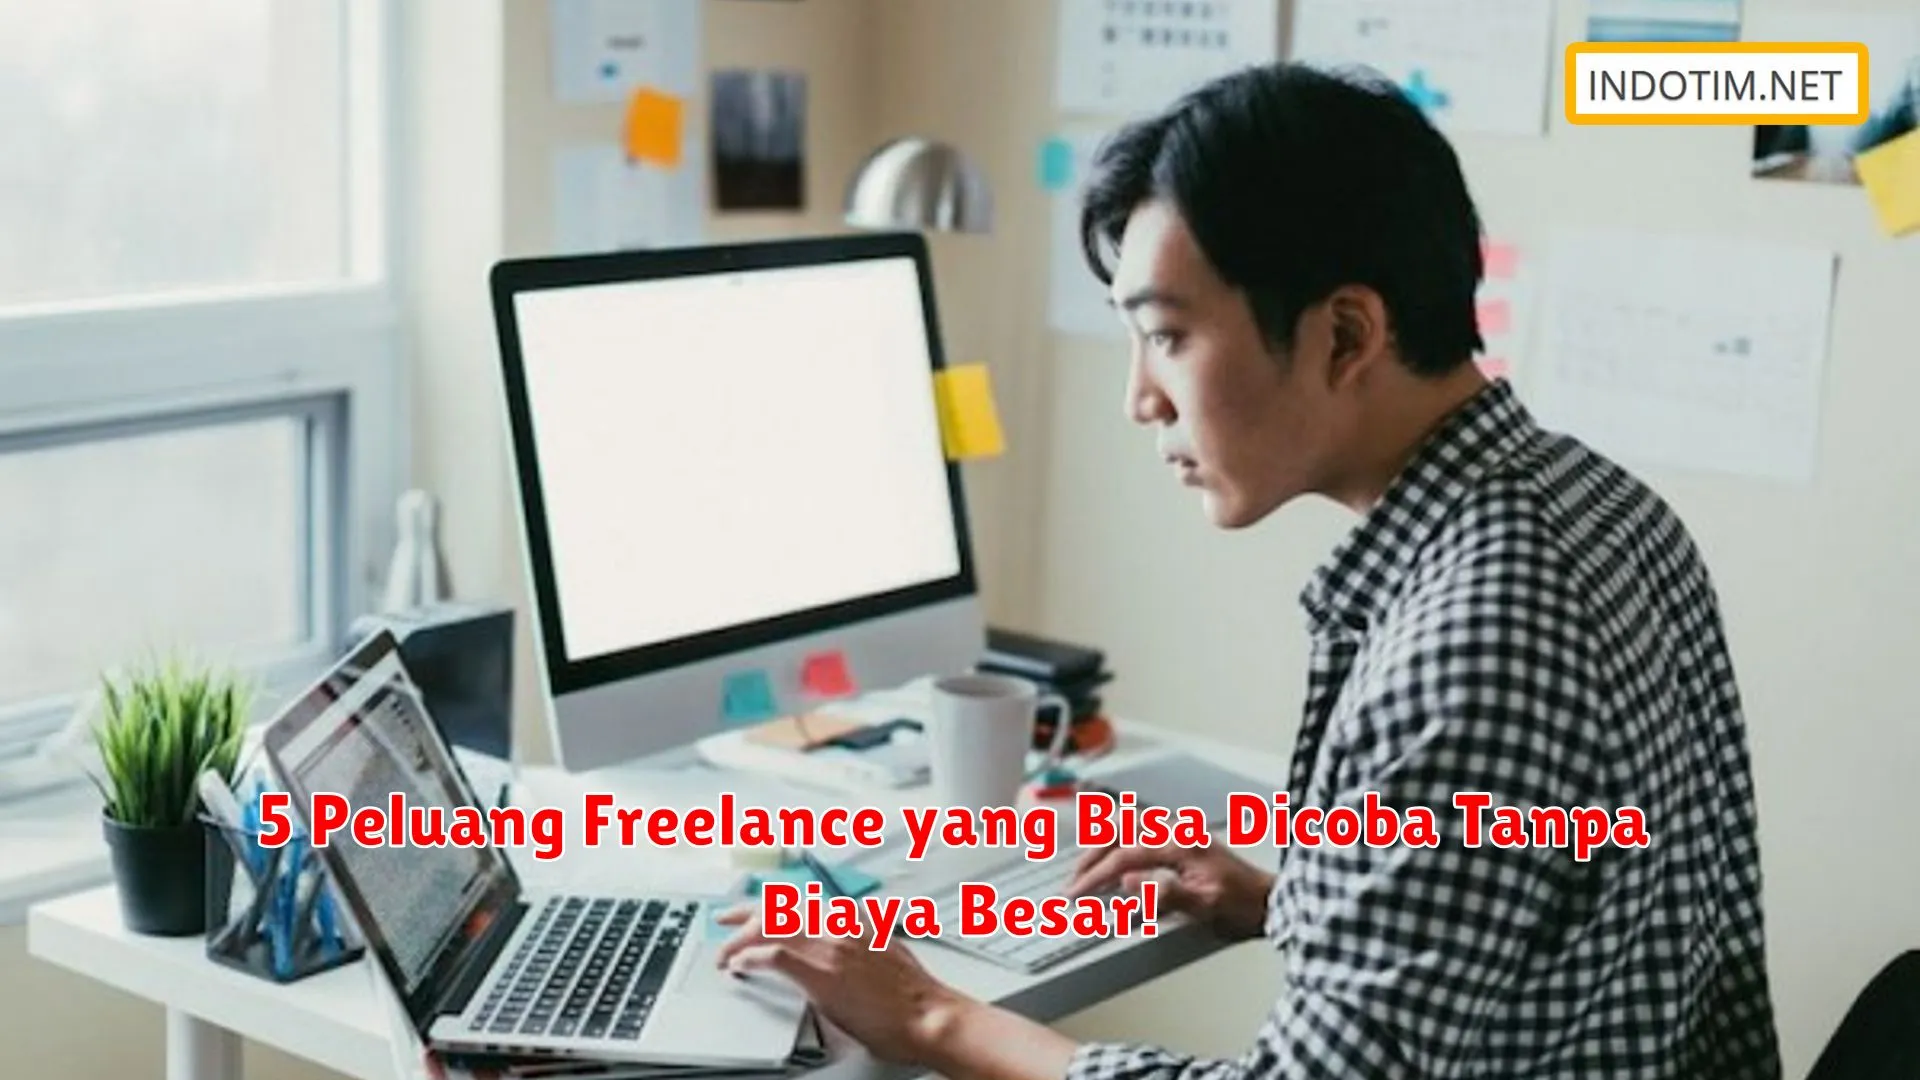 5 Peluang Freelance yang Bisa Dicoba Tanpa Biaya Besar!